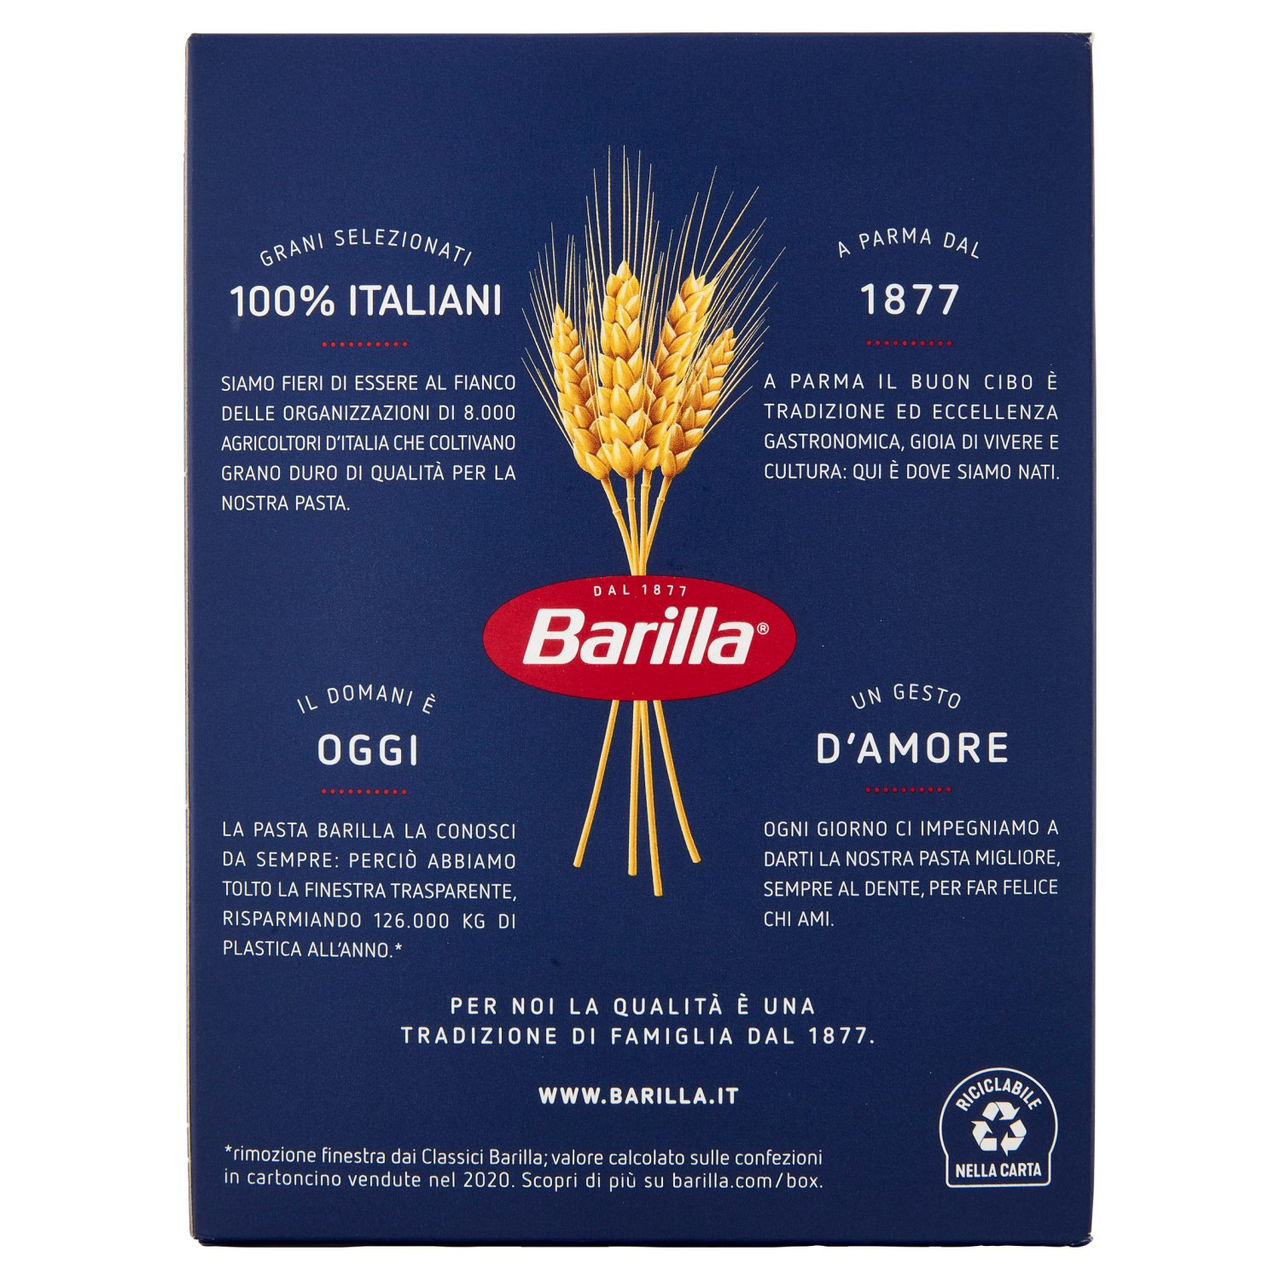 Barilla Pasta Mezze Maniche Rigate n.84 100% Grano Italiano 500g